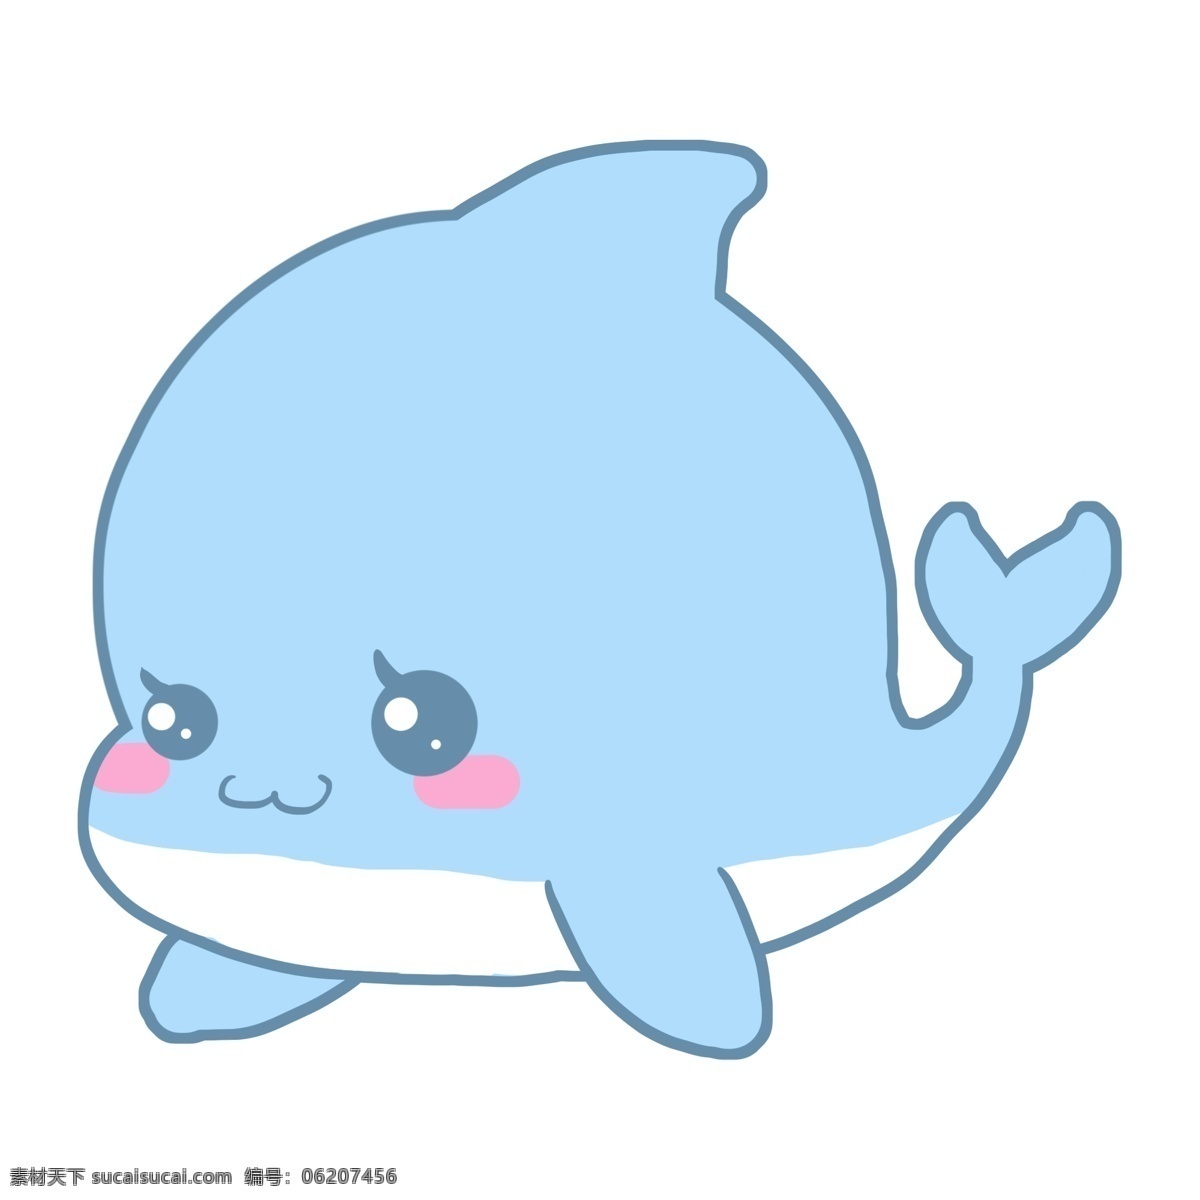 可爱小海豚 蓝色的 手绘动物 手绘海豚